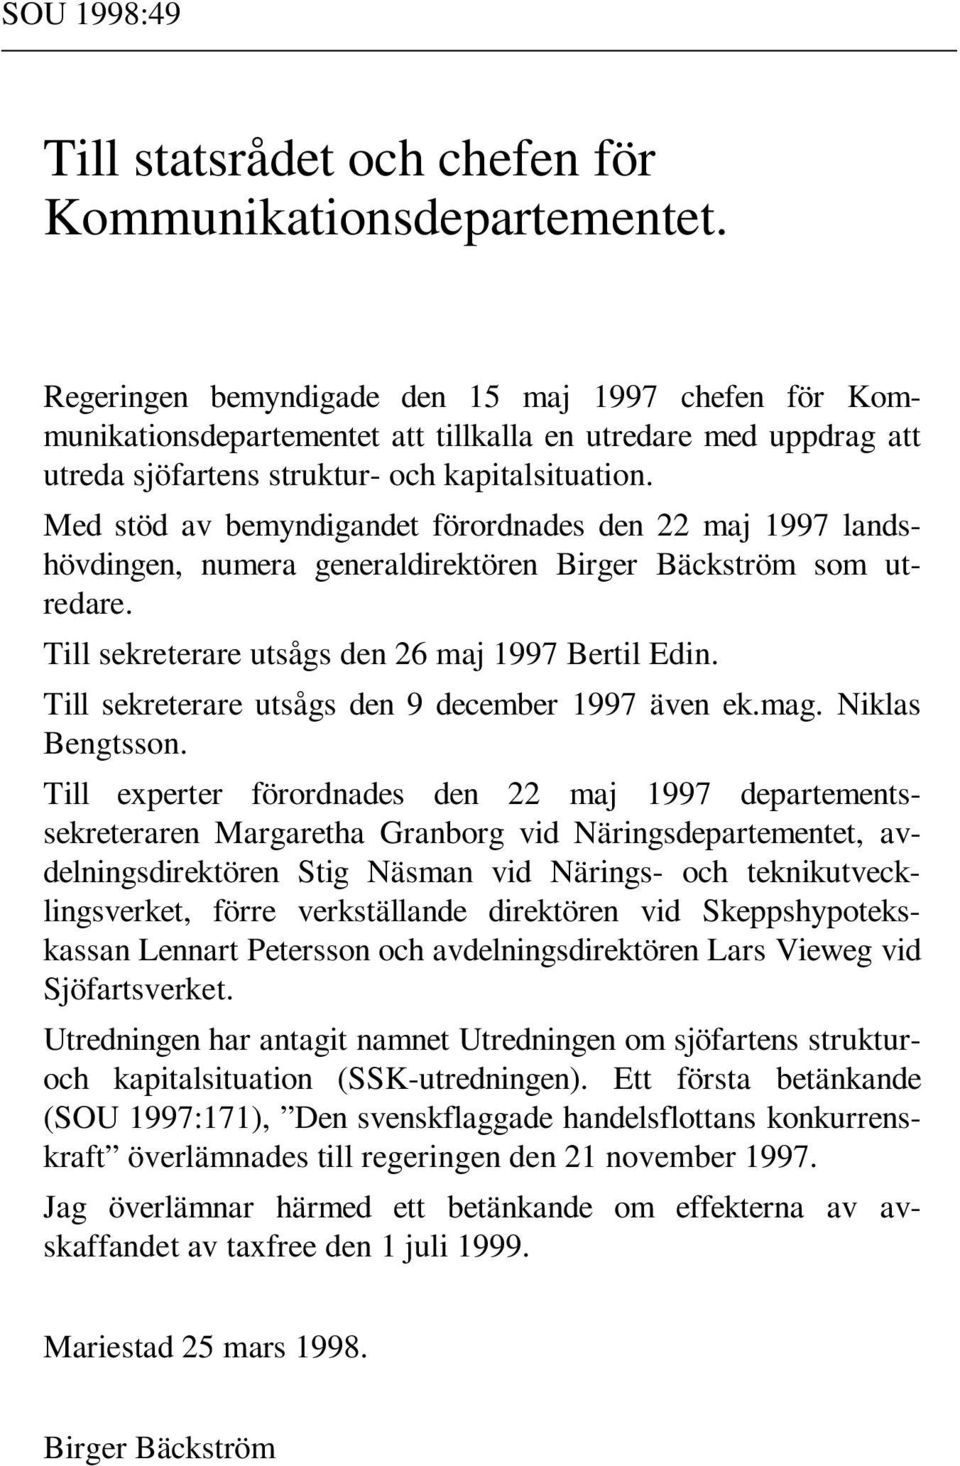 Med stöd av bemyndigandet förordnades den 22 maj 1997 landshövdingen, numera generaldirektören Birger Bäckström som utredare. Till sekreterare utsågs den 26 maj 1997 Bertil Edin.